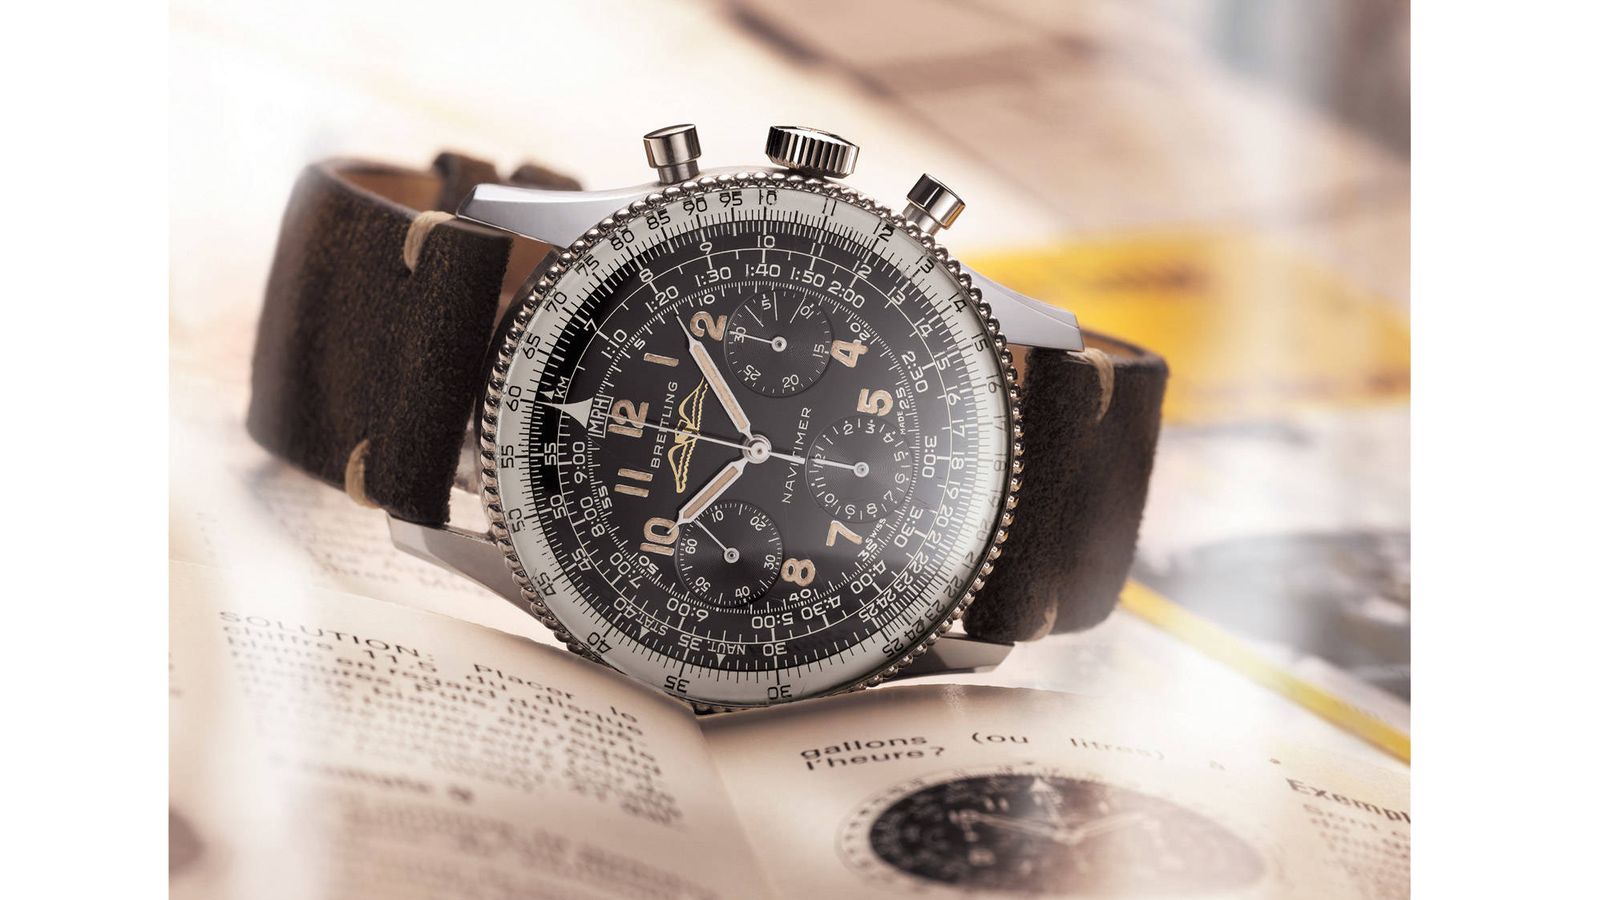 Breitling reedita su reloj de pulsera más icónico